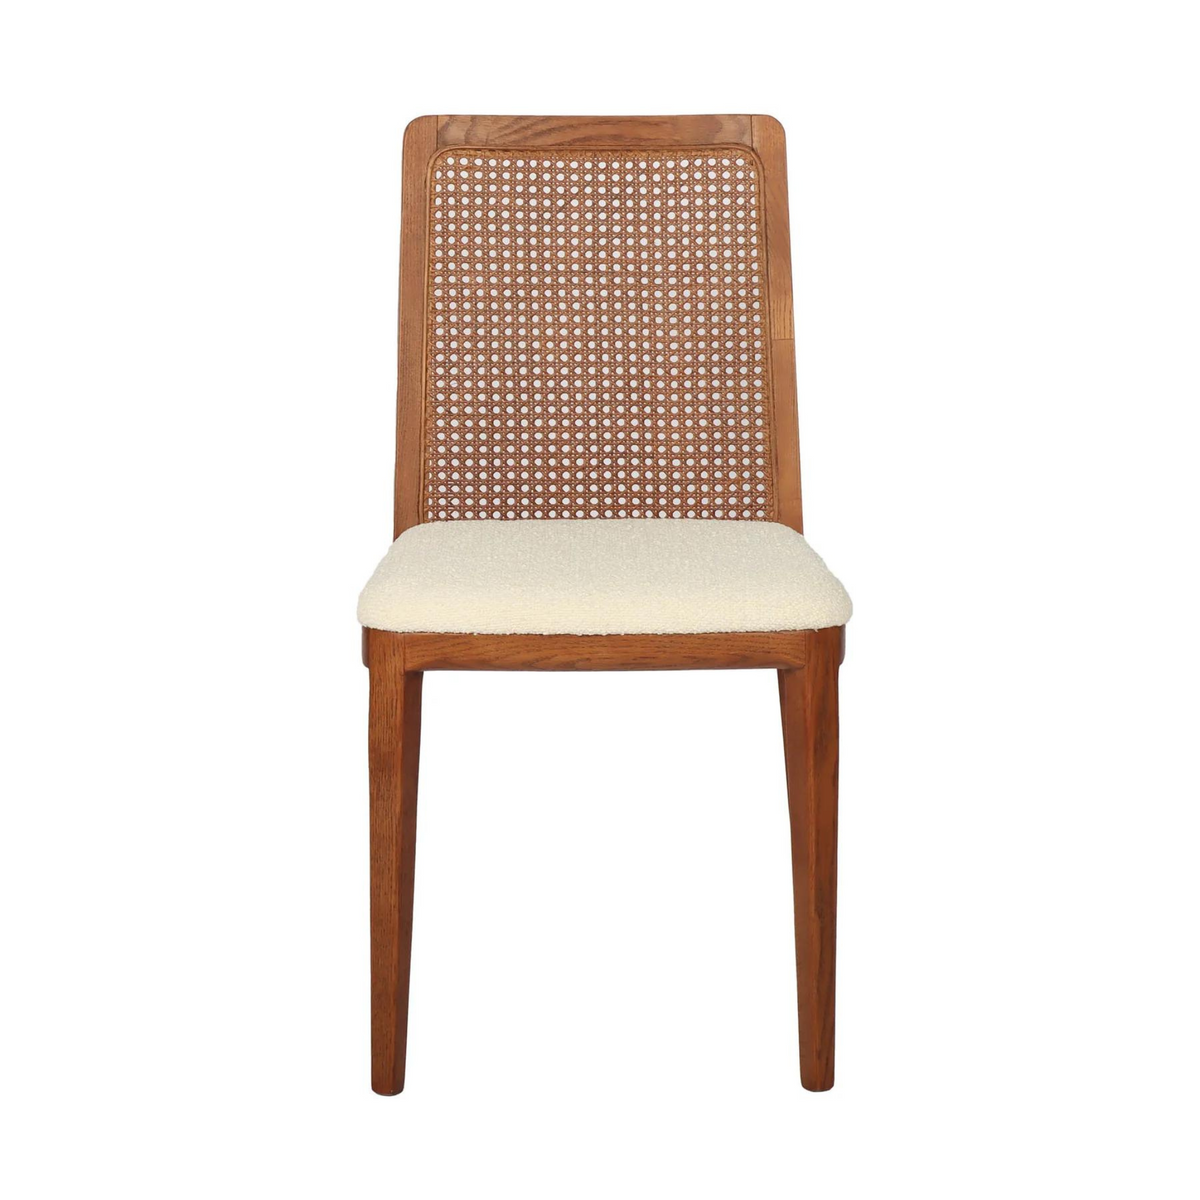 cane dining chair portland oregon